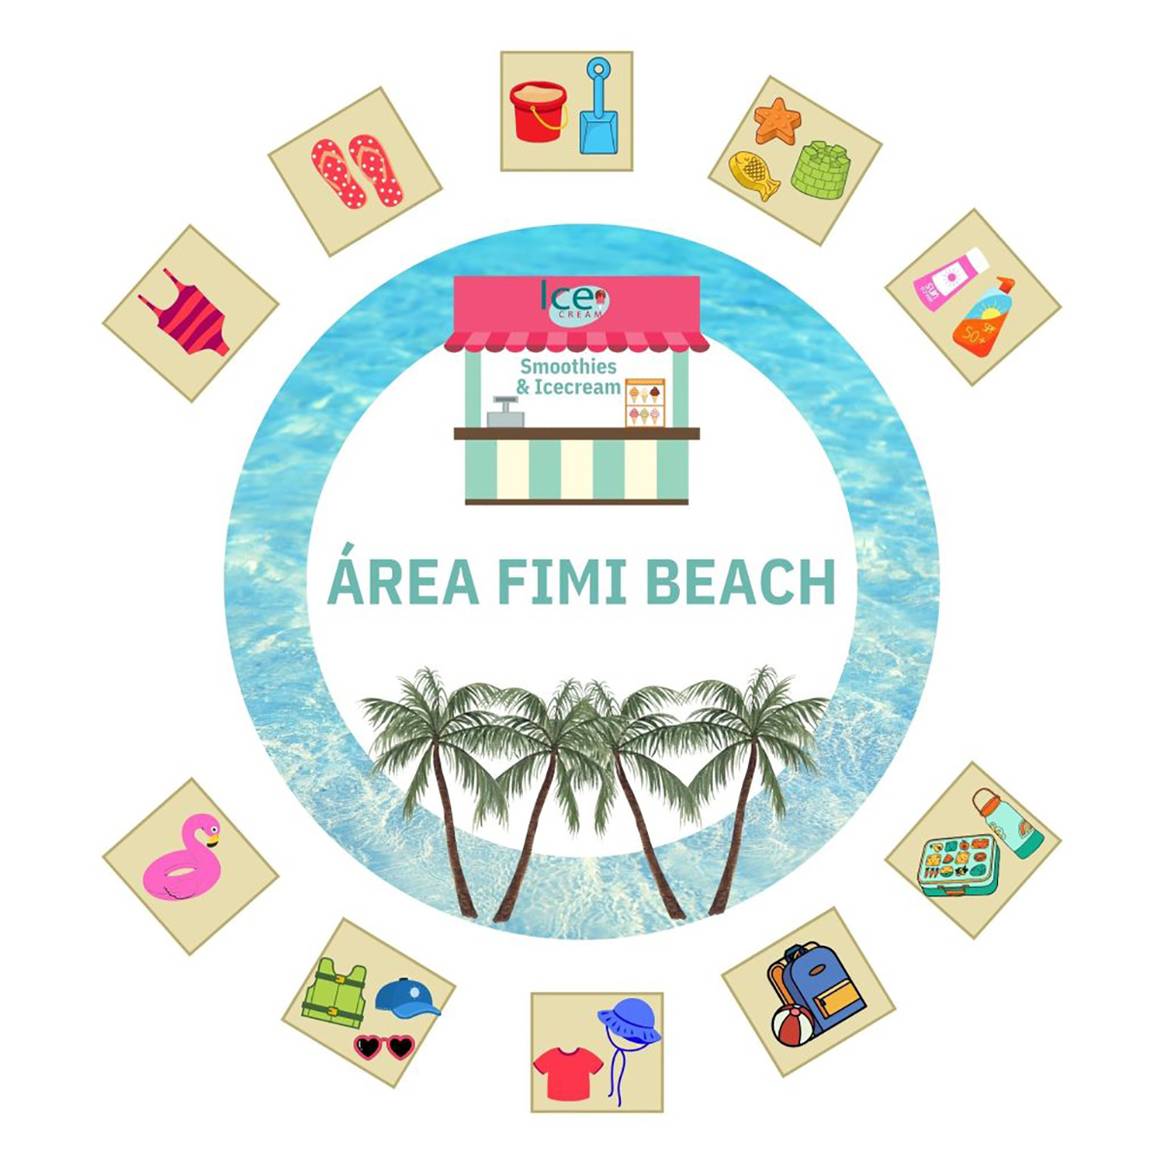 Cartel del nuevo espacio expositivo “Fimi Beach” de Fimi.